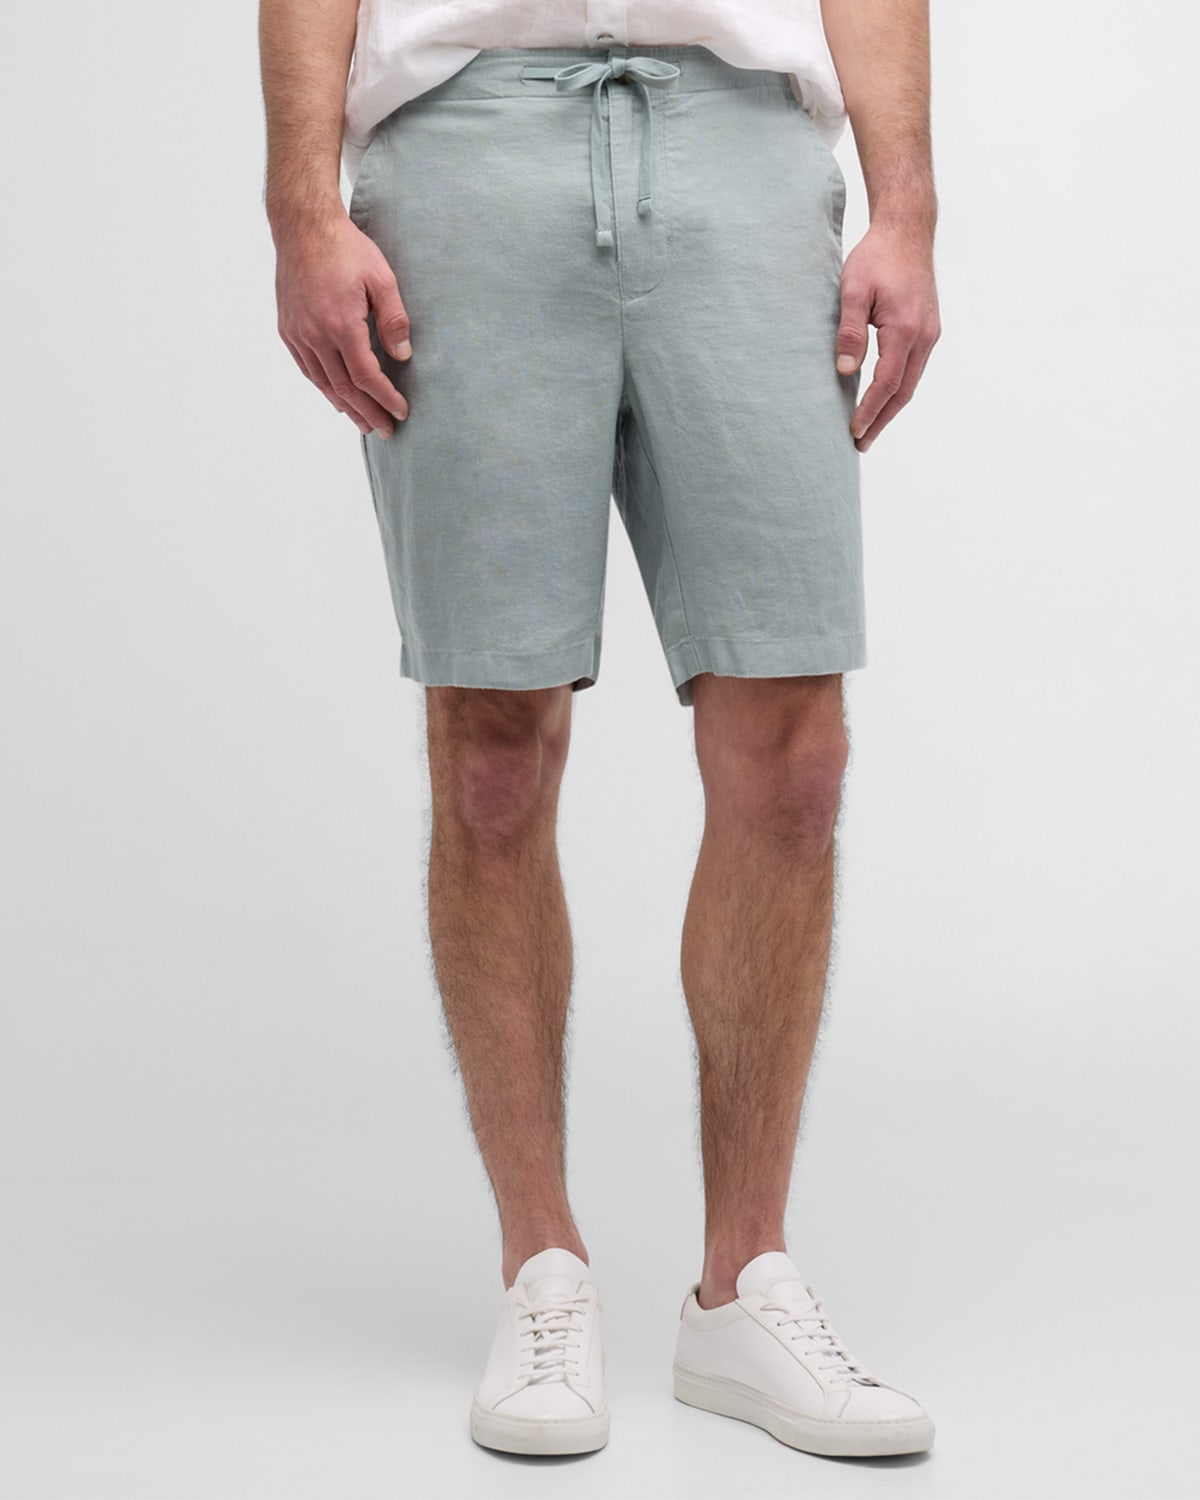 Men's Lightweight Hemp Shorts